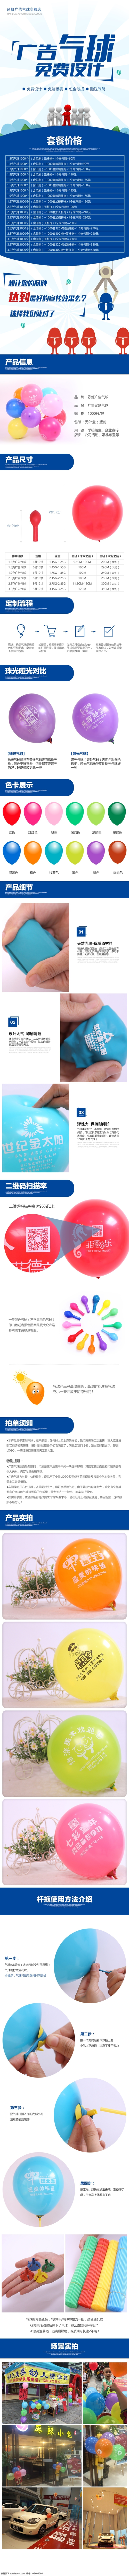 气球定制详情 气球定制 服务 广告 详情